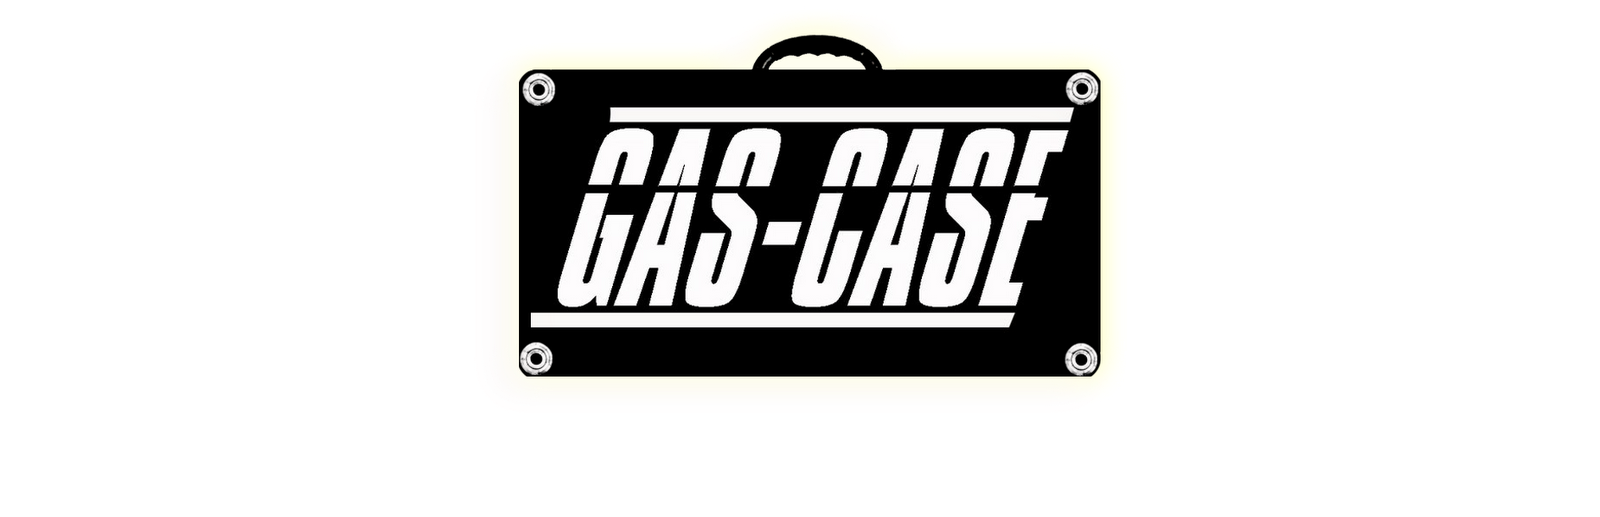 Gas Case